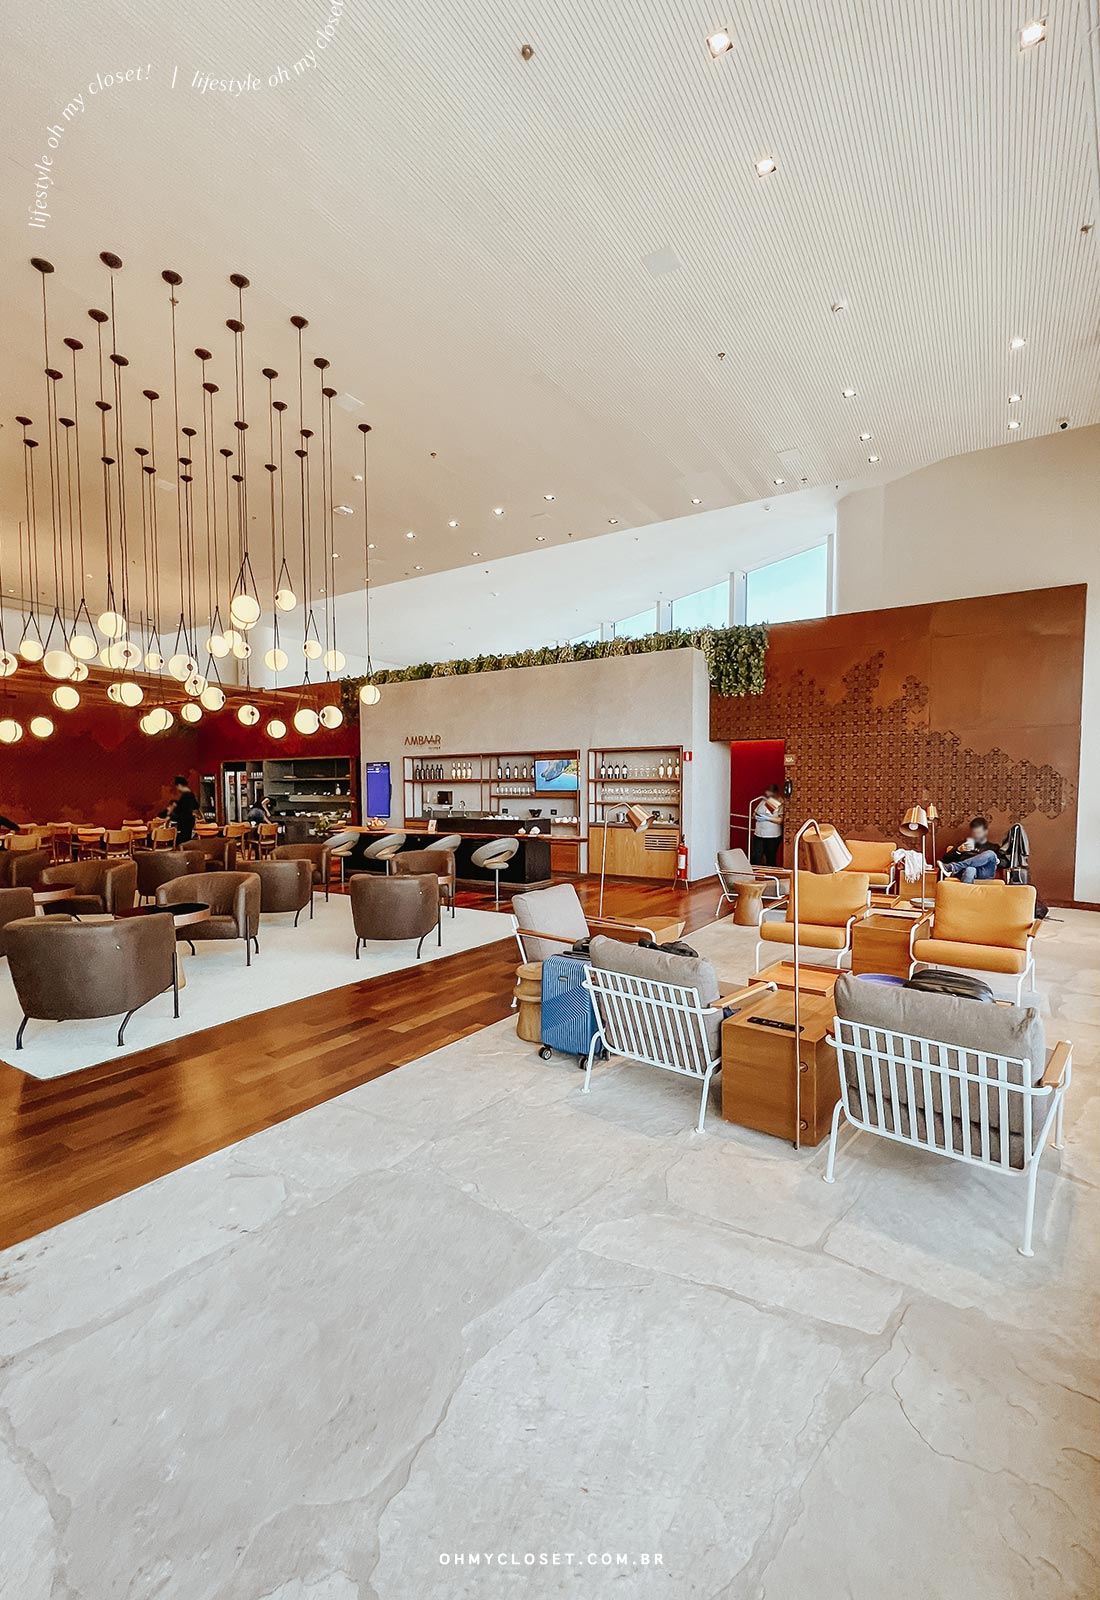 Outro ângulo do espaço interno do Ambaar Lounge no terminal internacional de Confins